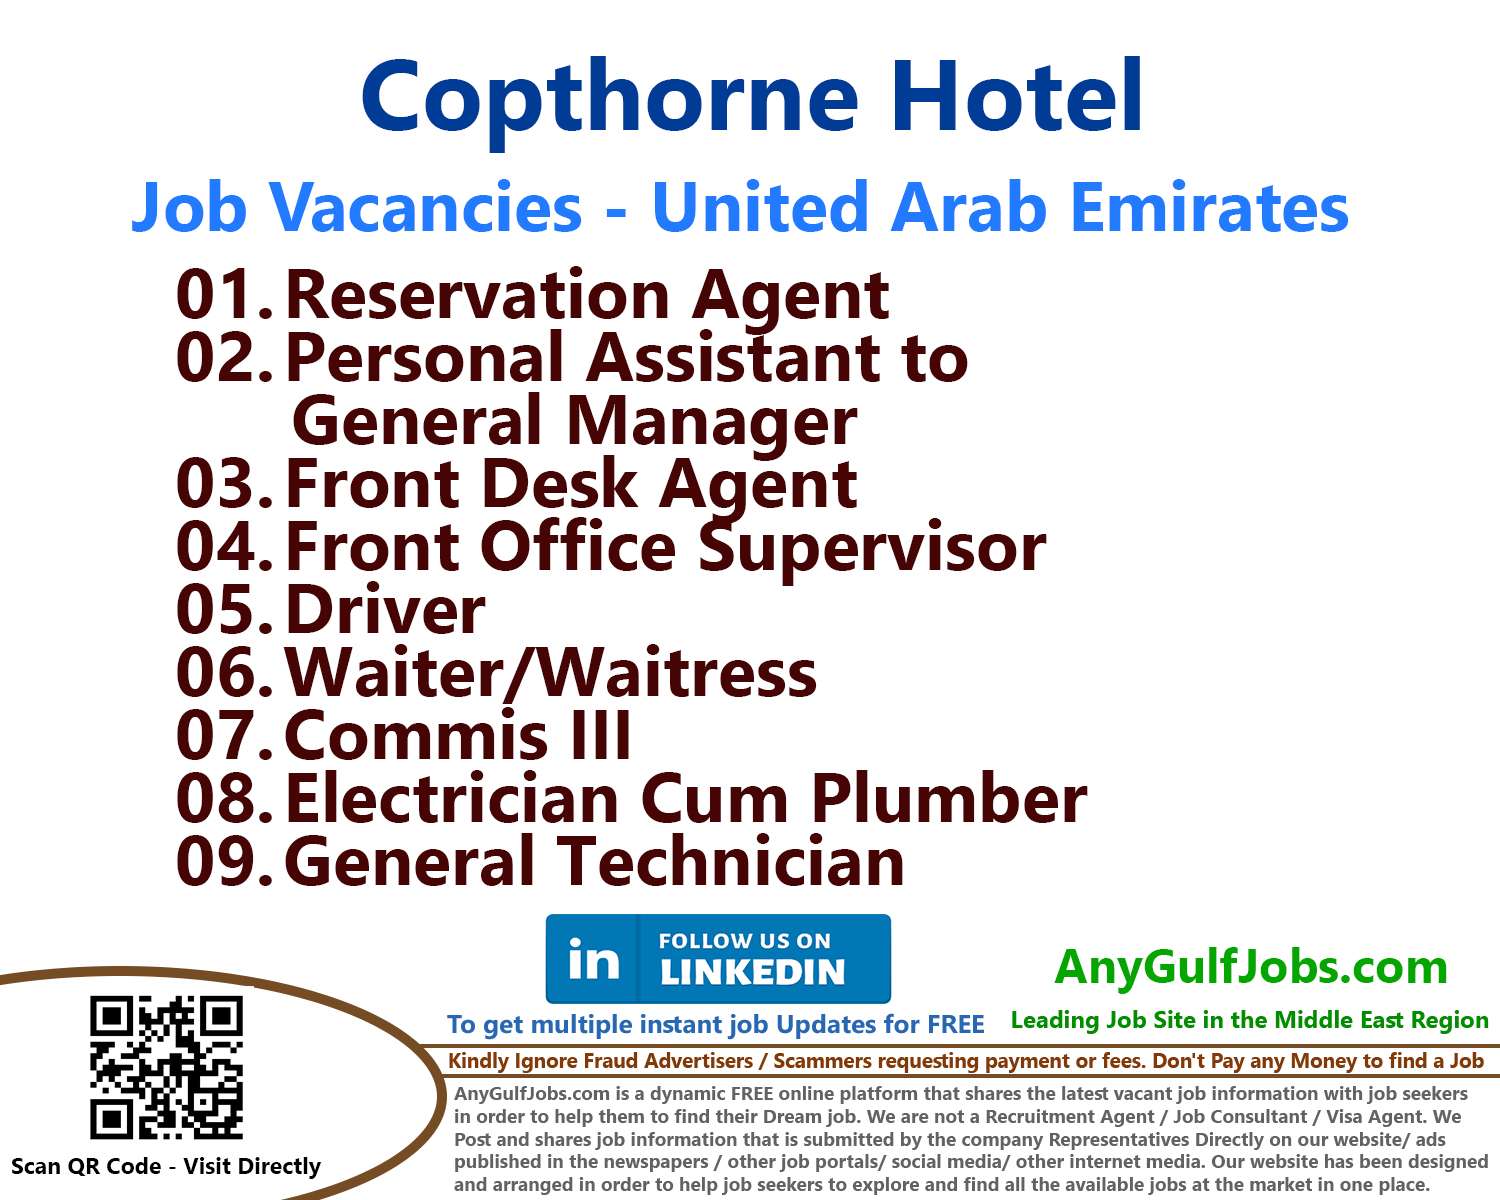 Copthorne Hotel Jobs | Careers - United Arab Emirates